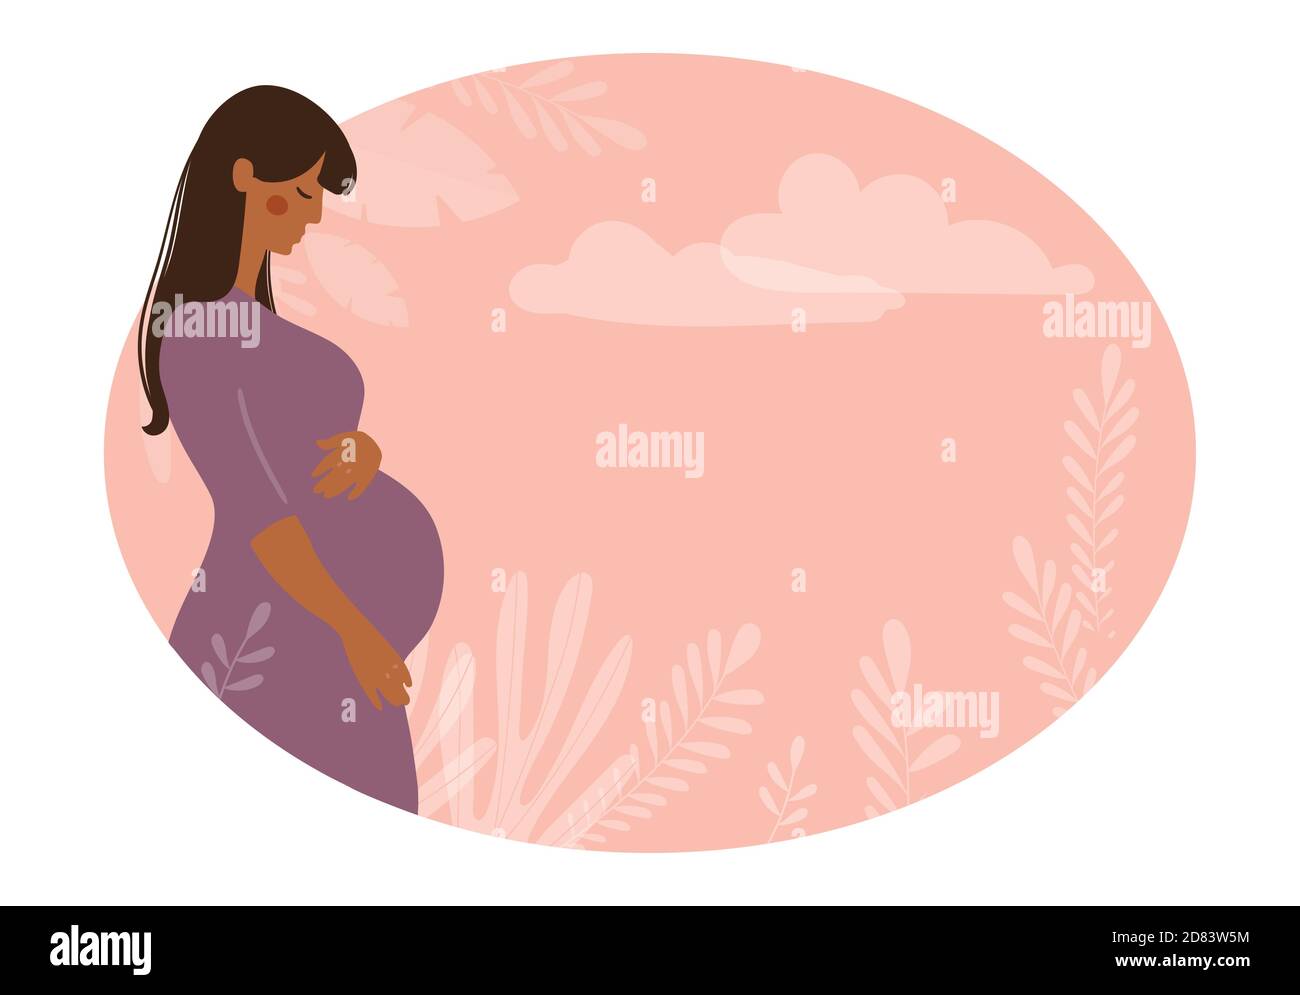 Bandera moderna sobre el embarazo y la maternidad. Cartel con una hermosa mujer embarazada joven con pelo largo y lugar para el texto. Diseño minimalista, dibujo vectorial de dibujos animados planos Ilustración del Vector